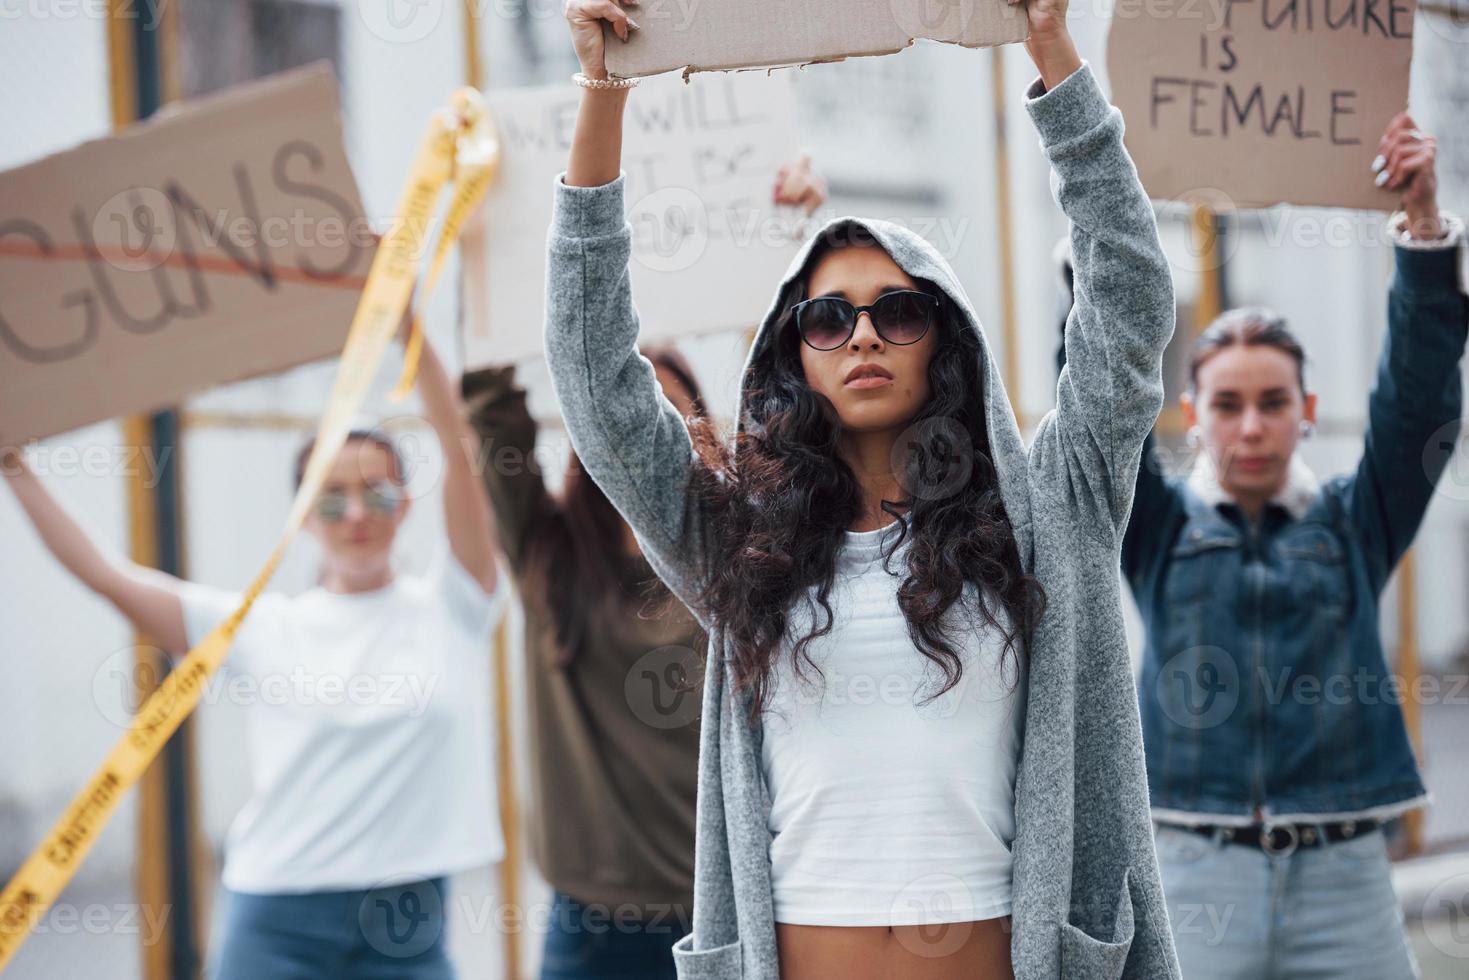 con occhiali da sole e cappuccio. gruppo di donne femministe protestano per i loro diritti all'aperto foto